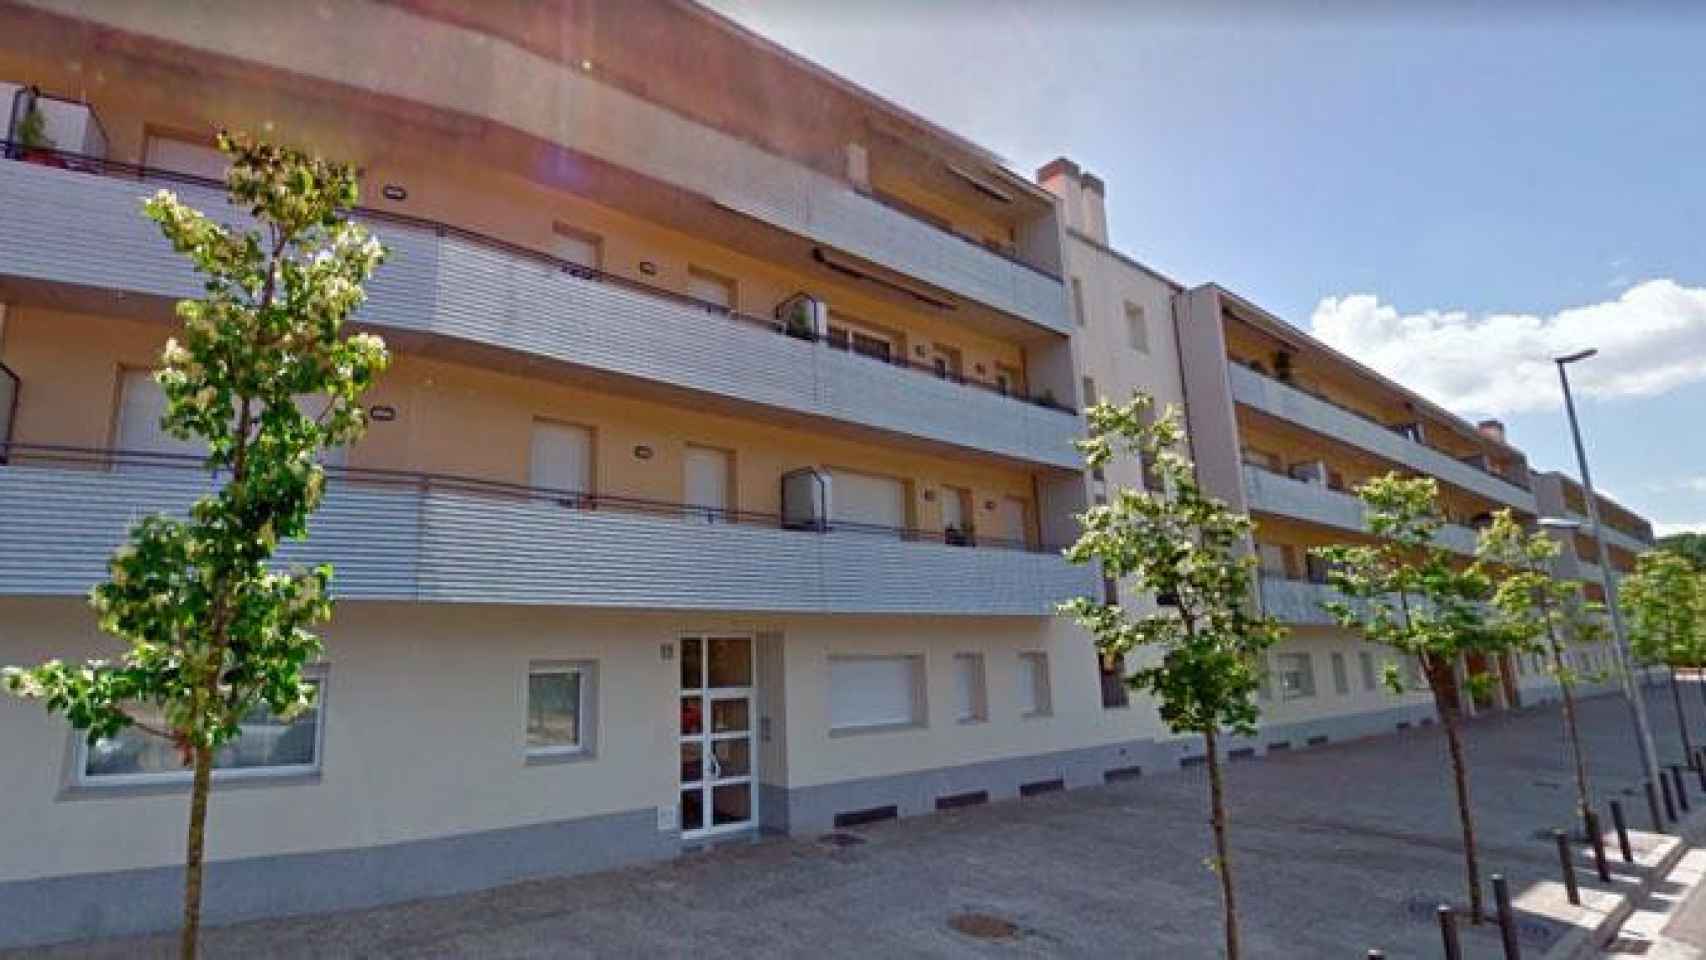 Edificio afectado por el incendio en Girona / GOOGLE